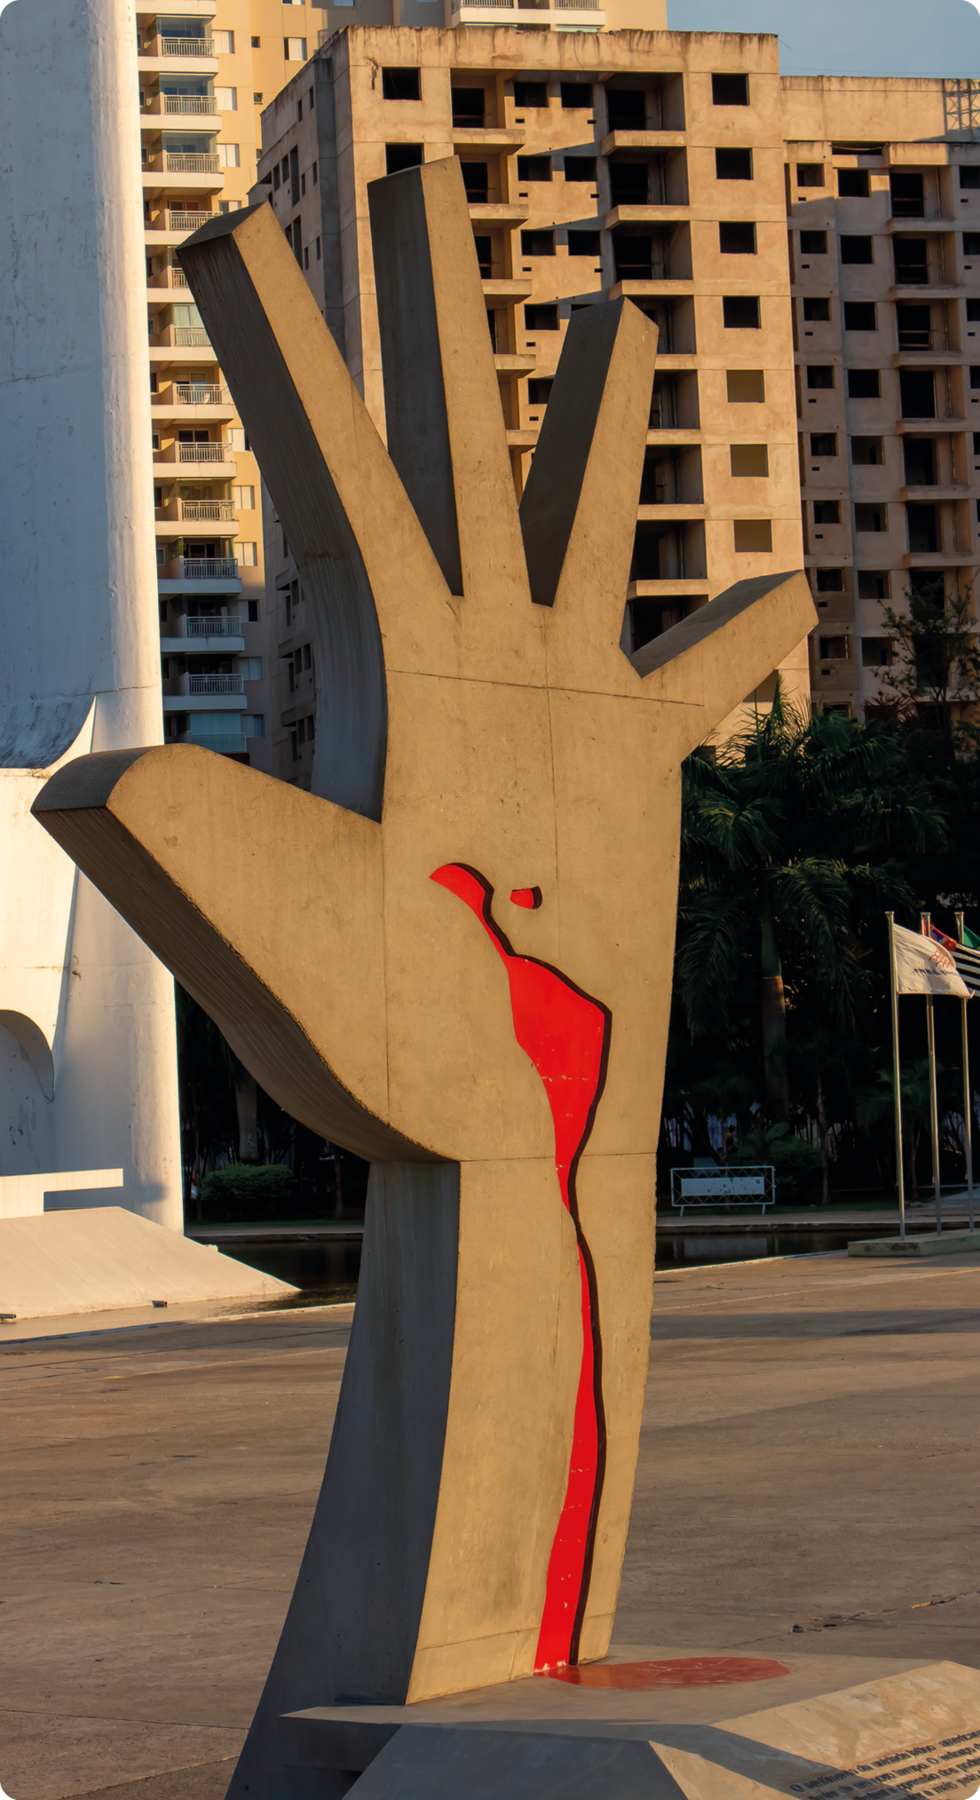 Fotografia. Escultura de uma mão espalmada com a silhueta da América Latina em vermelho, com um traçado que estende até o pulso. Ao fundo, prédios.